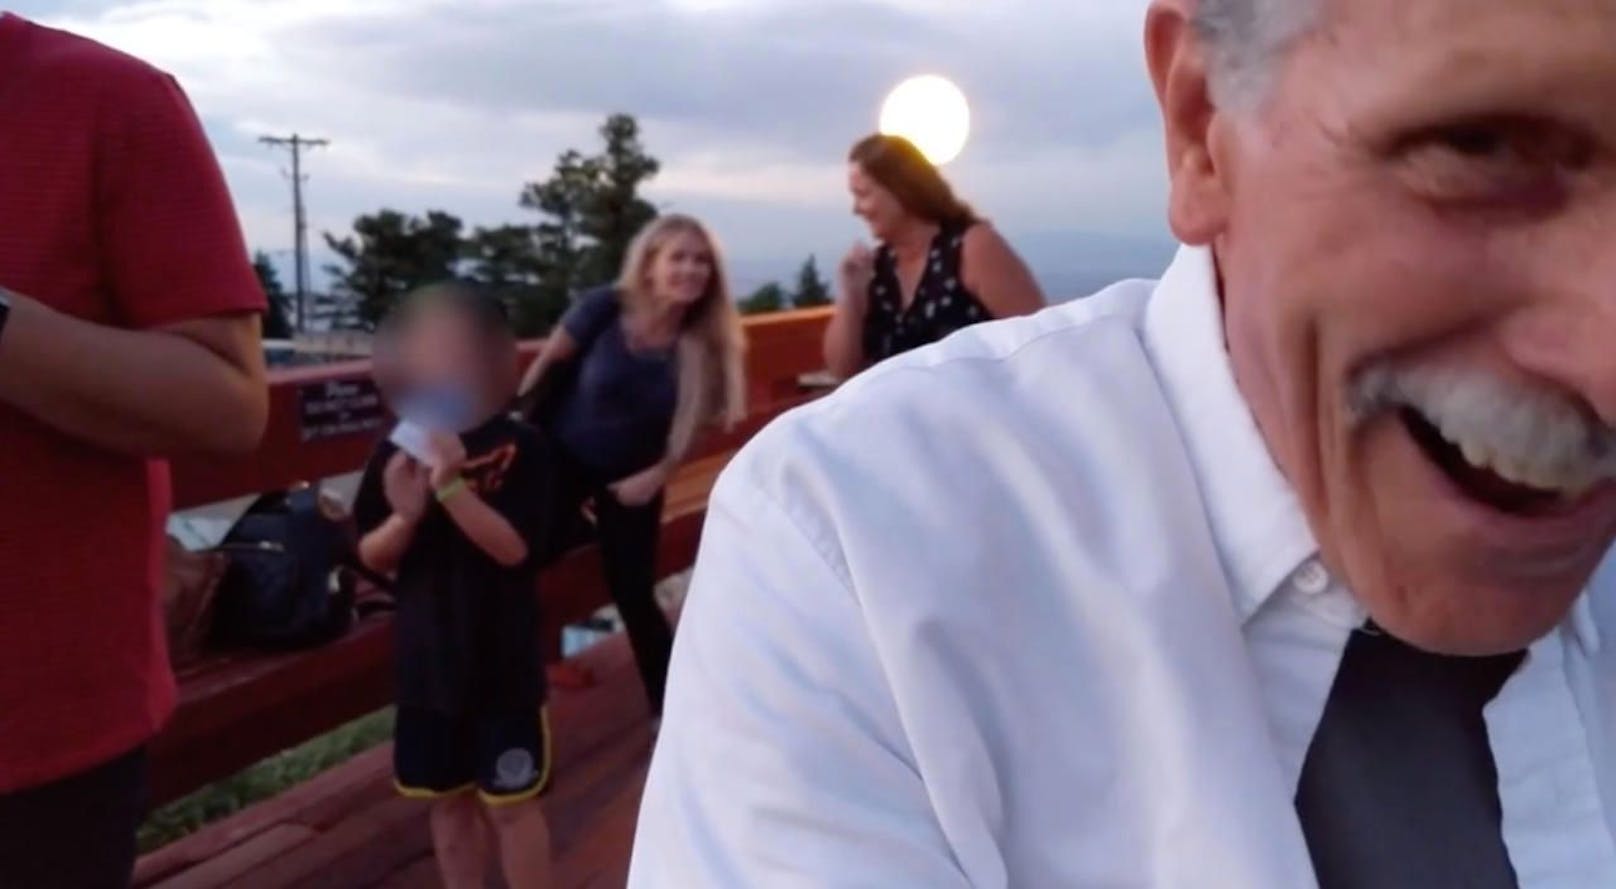 Kamera falsch herum halten kann auch Spaß machen: Amüsieren sich die Touristen über den Hochzeitsantrag oder doch über &quot;Pannen-Opa&quot; John?